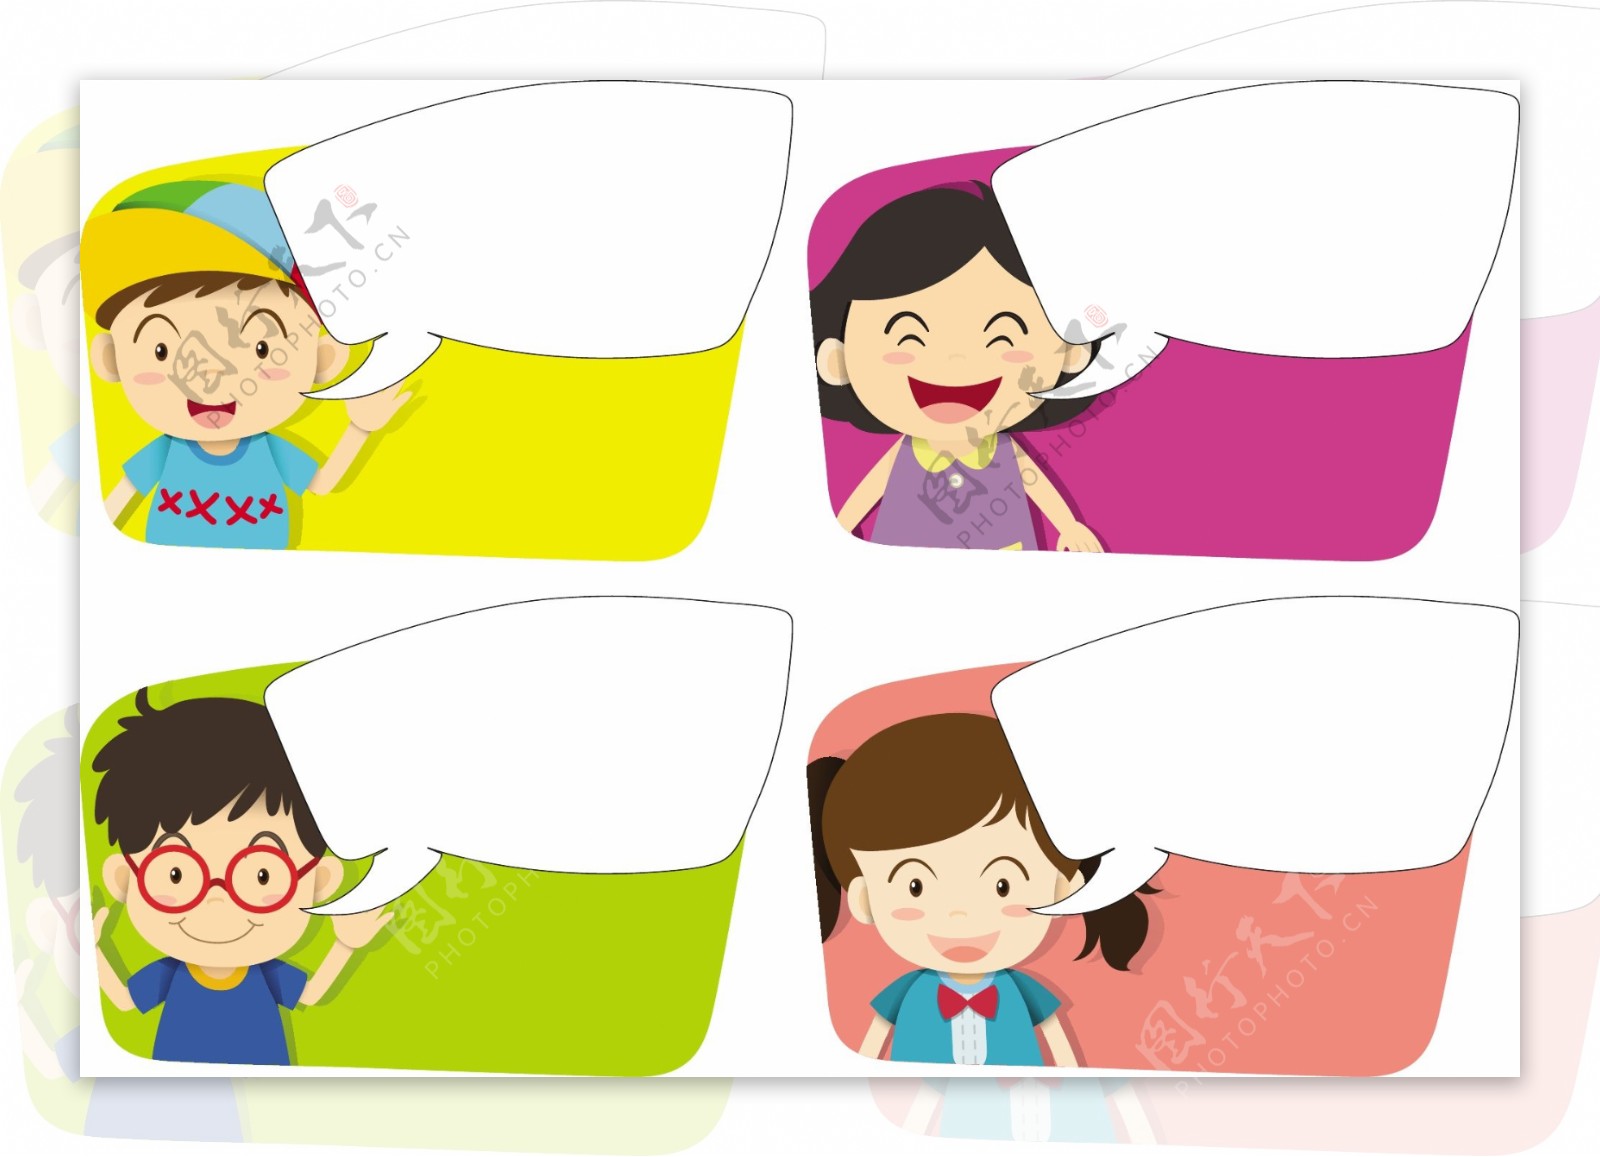 孩子插图四个对话框设计模板